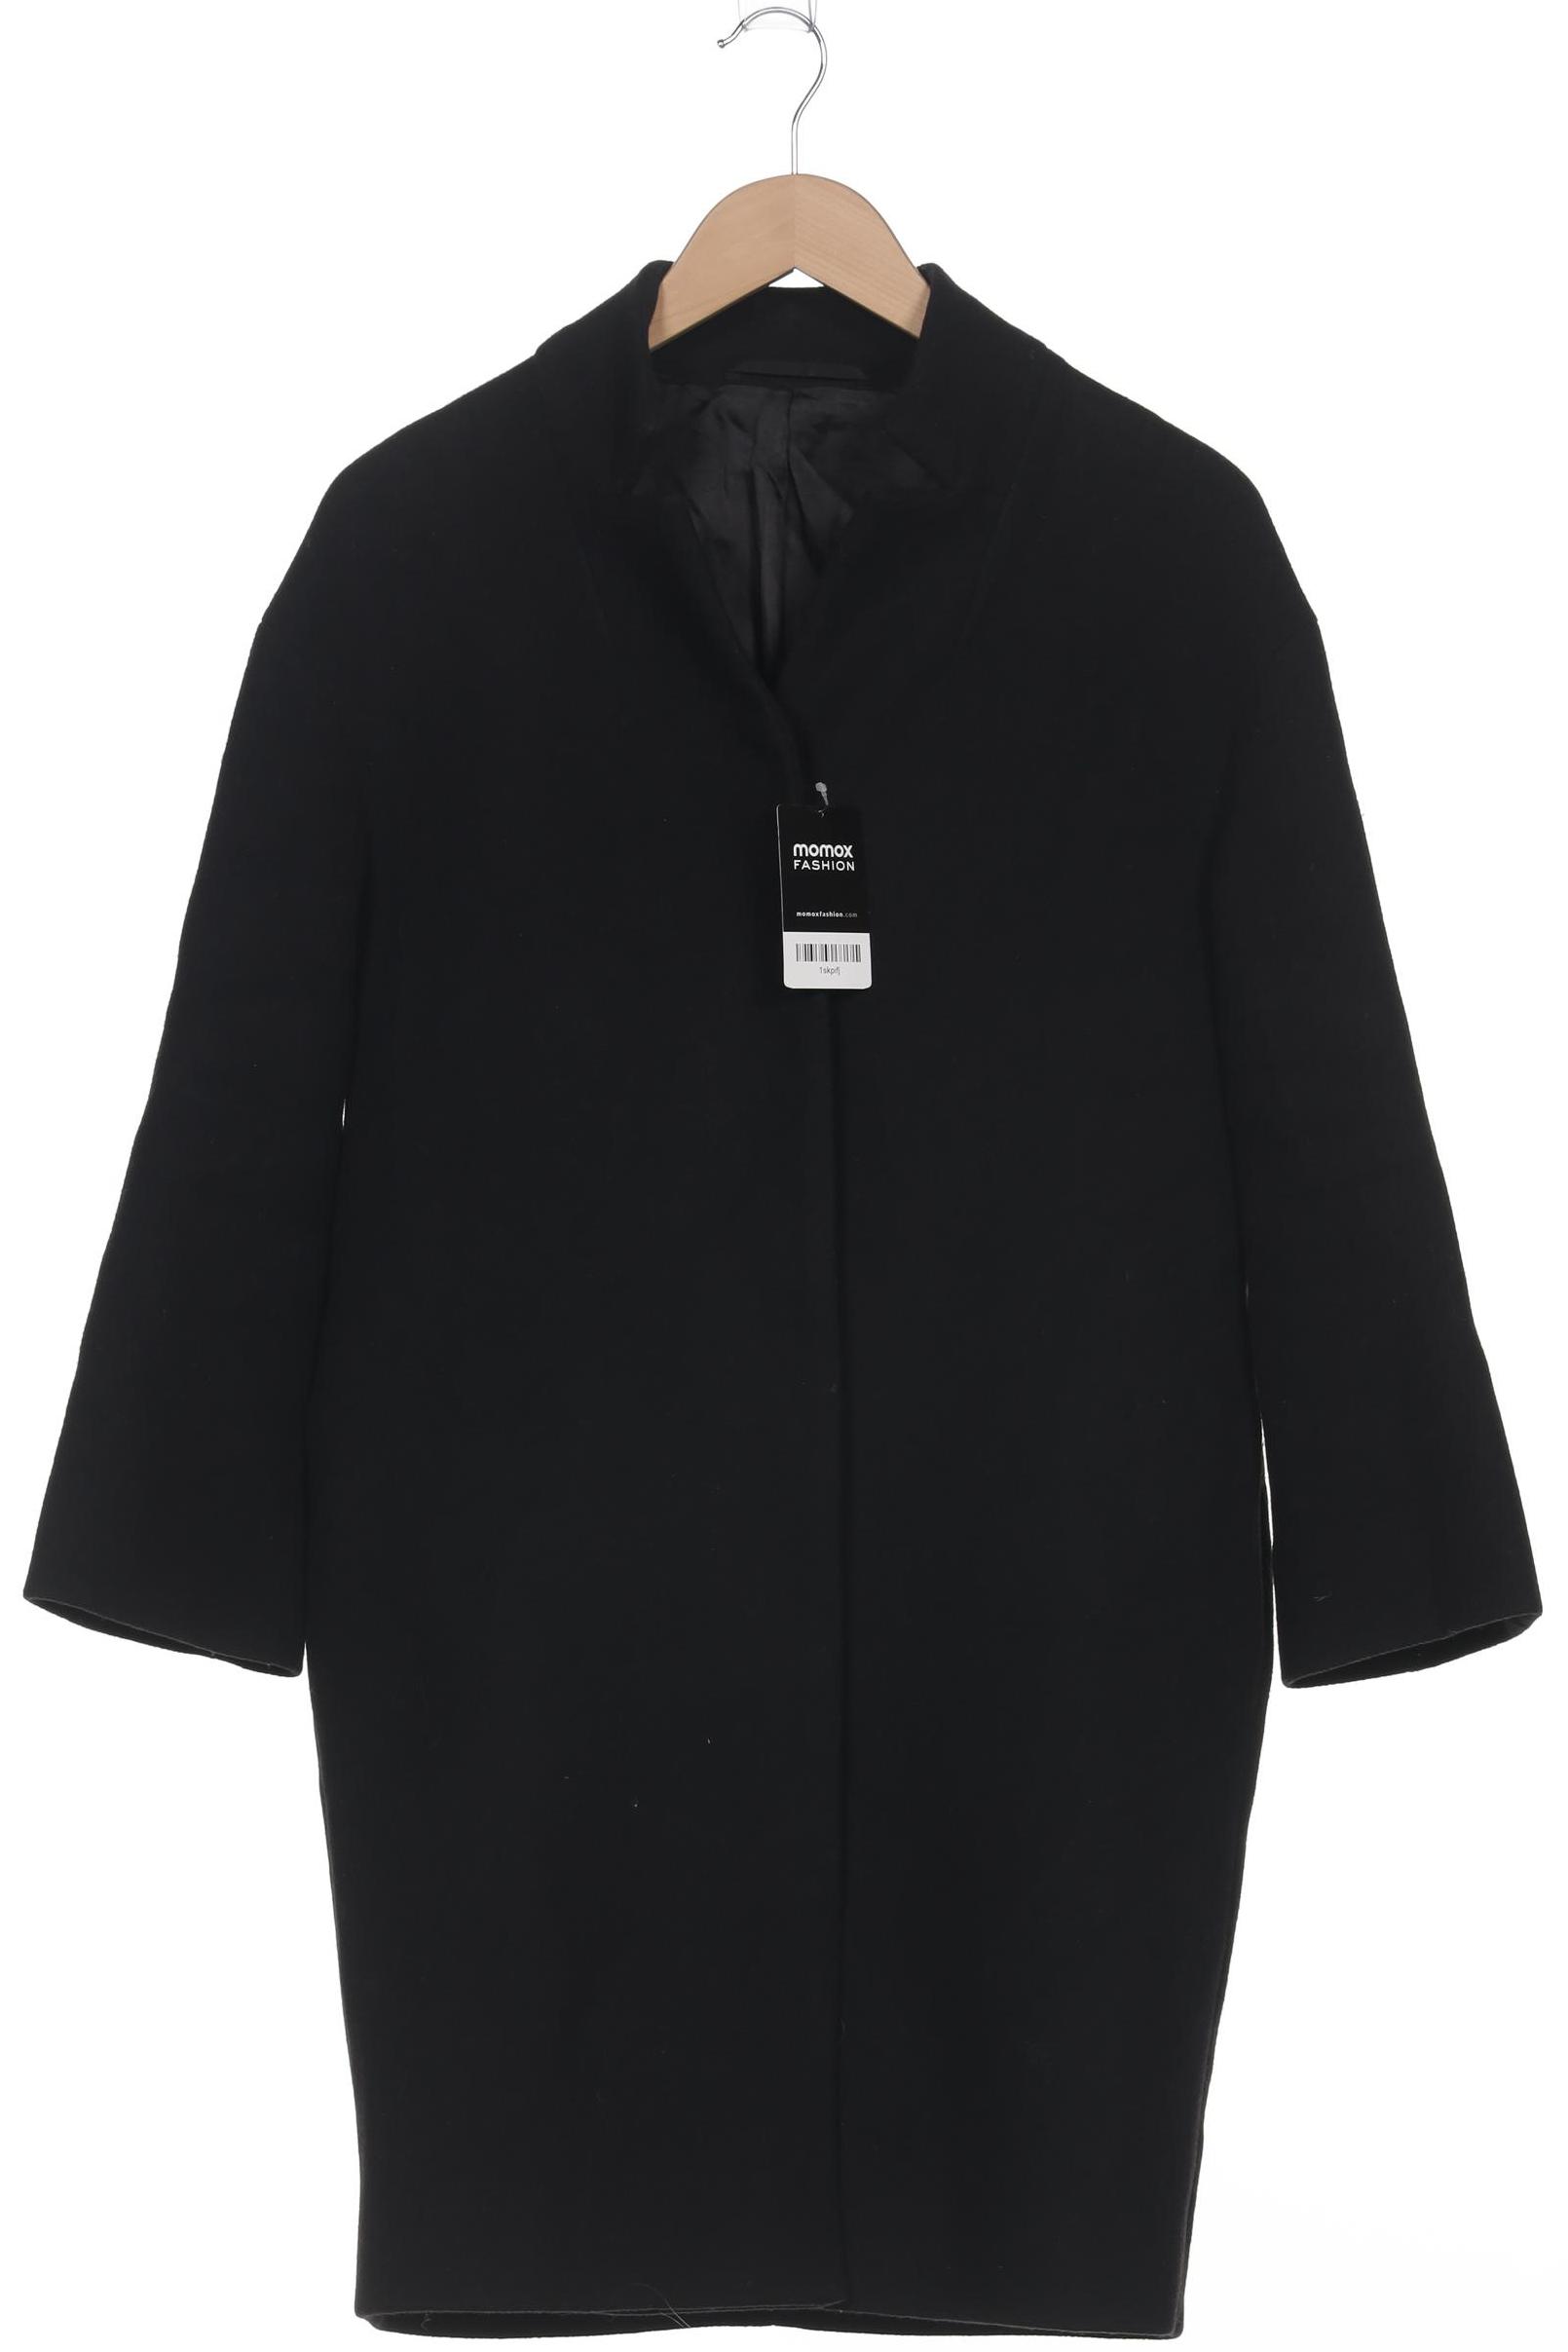 COS Damen Mantel, schwarz, Gr. 34 von COS